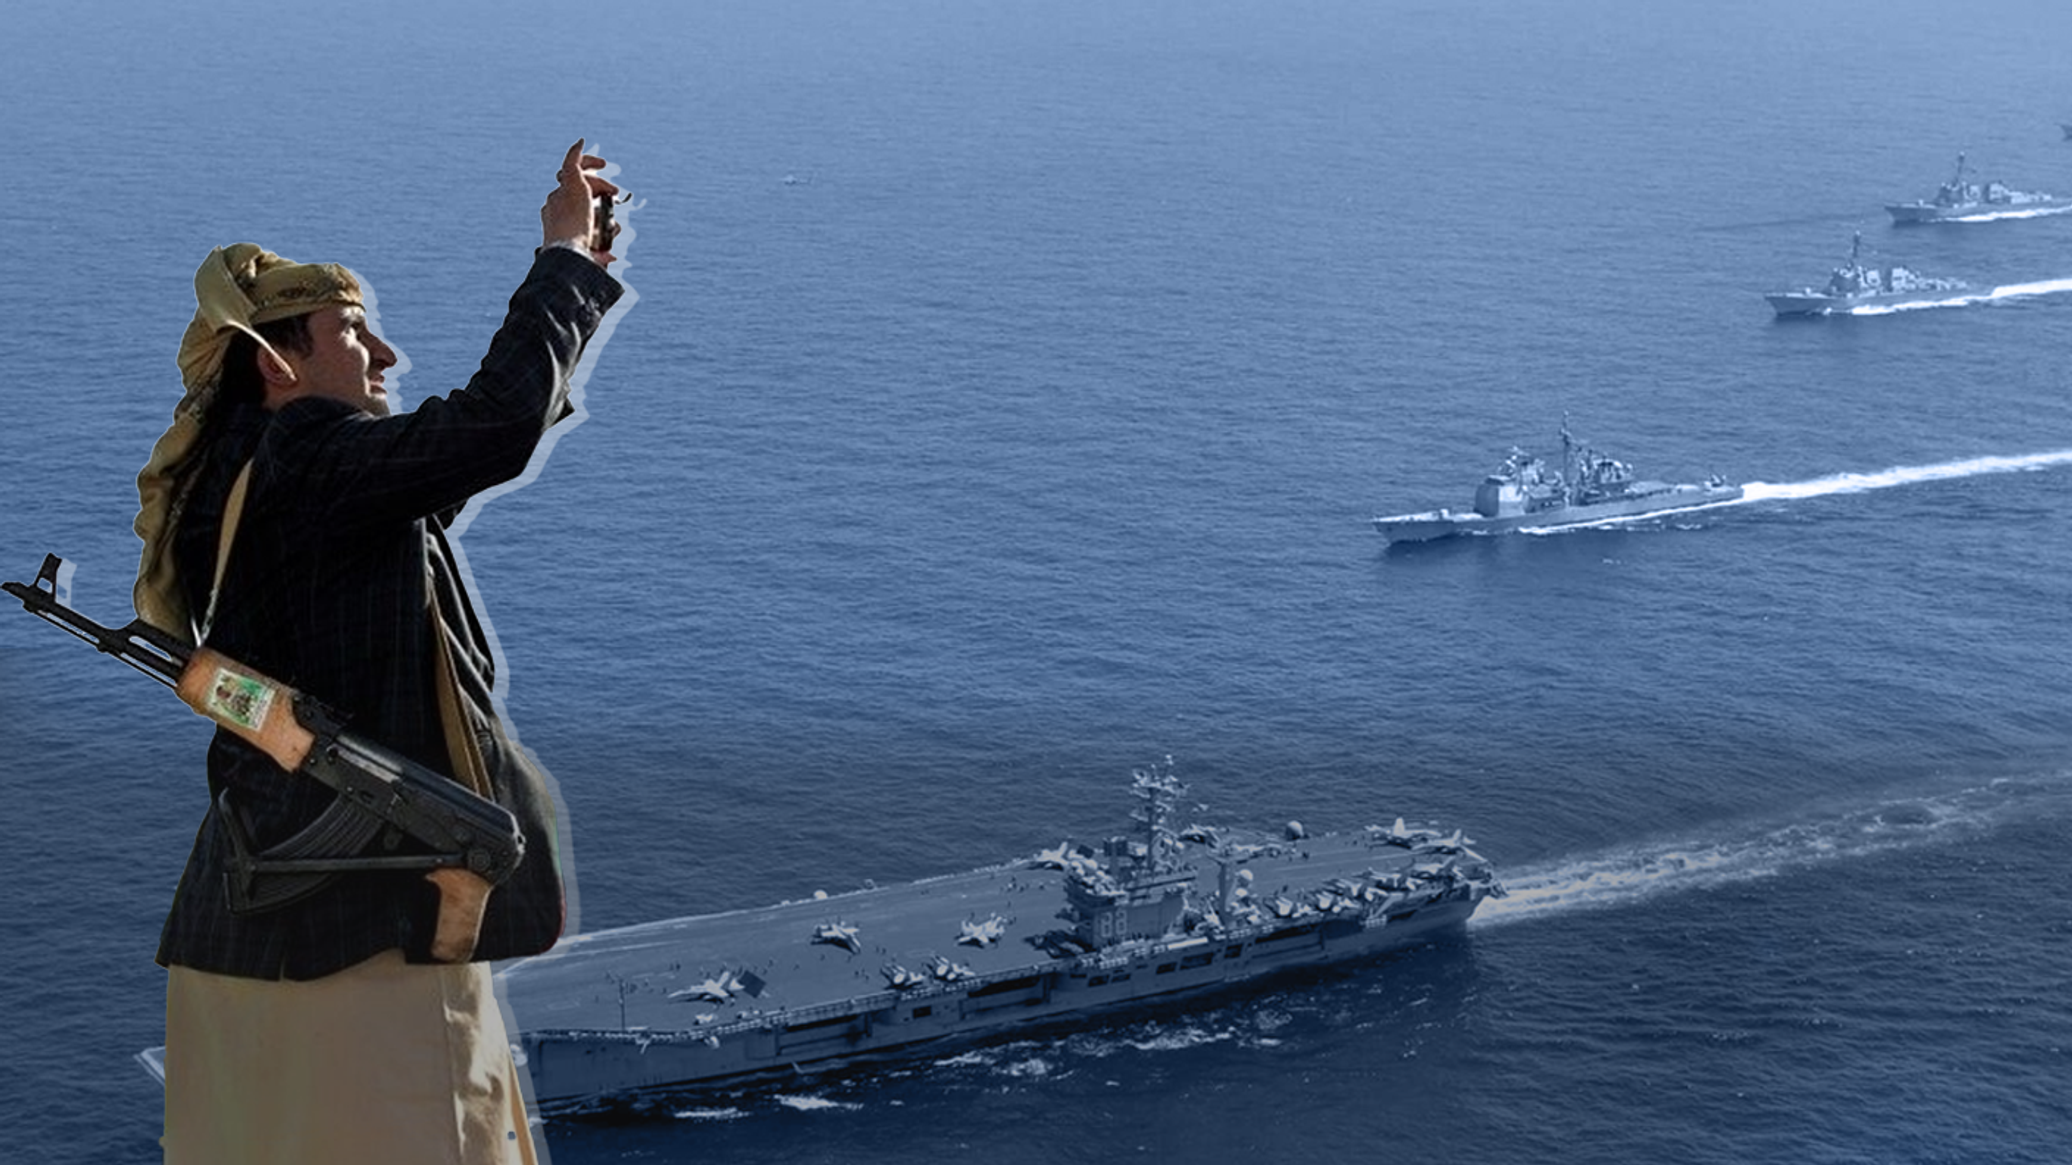 "أنصار الله" تعلن استهداف سفينة "كيم رينجر" الأمريكية في خليج عدن بصواريخ بحرية